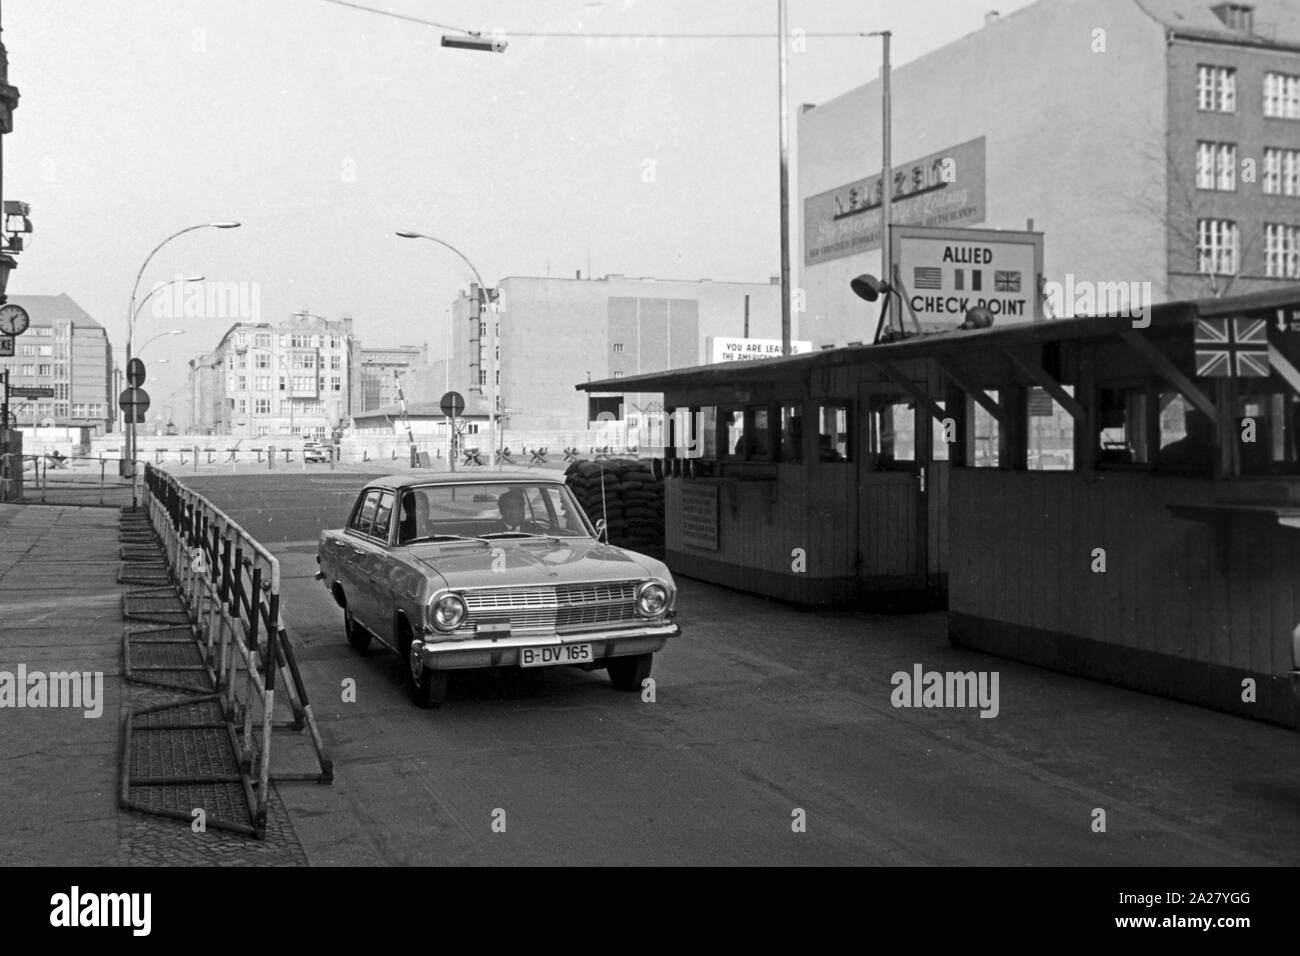 Opel am Checkpoint Charlie in der Kochstraße a Berlino, Deutschland 1963. Esercito alleato il Checkpoint Charlie in Kochstrasse; strada di Berlino, Germania 1963. Foto Stock